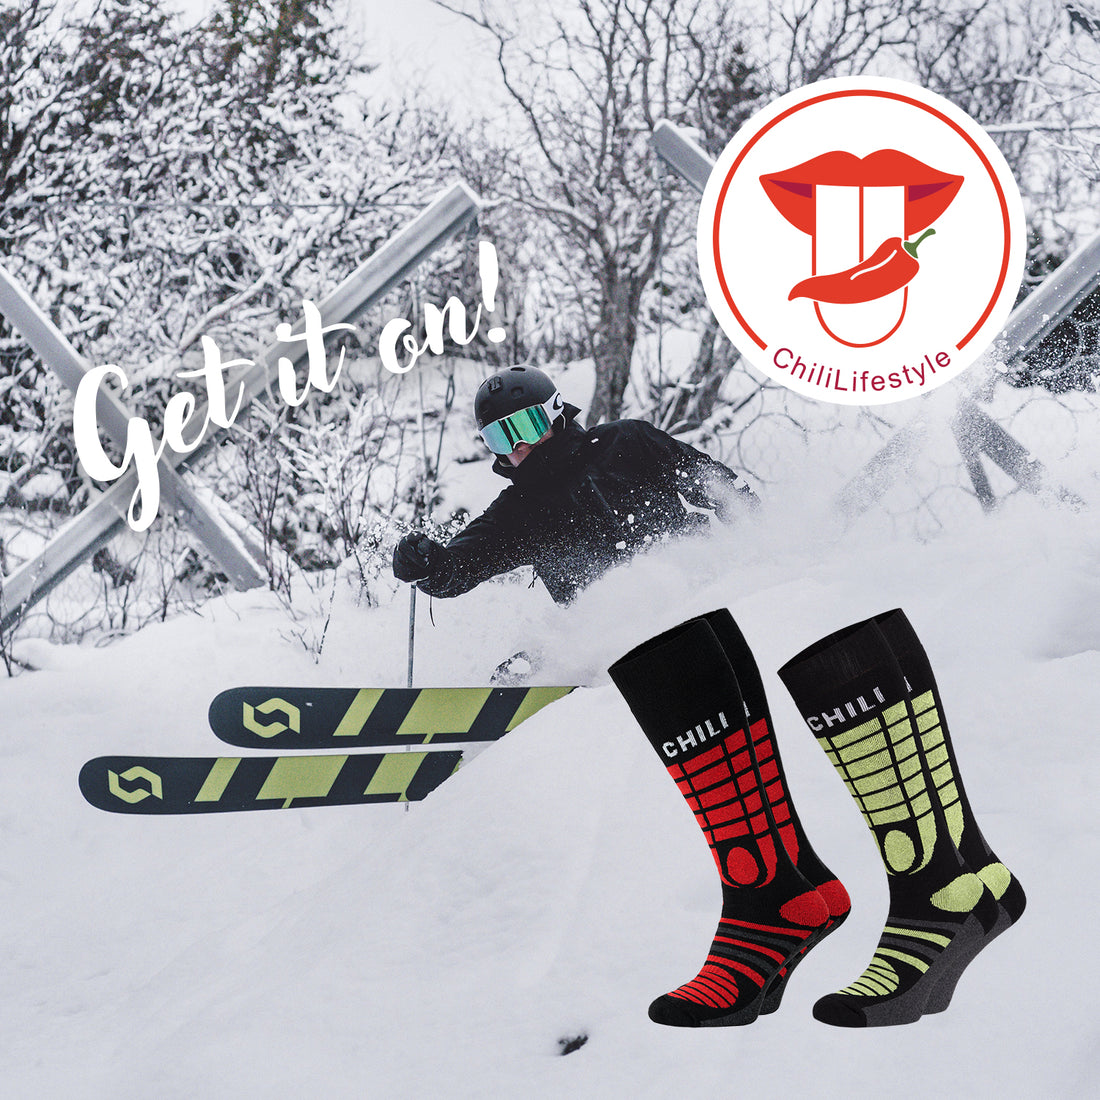 Chili Lifestyle Skisocken YEON, Winter Kniestrümpfe für Ski & Snowboard, 4 Paar